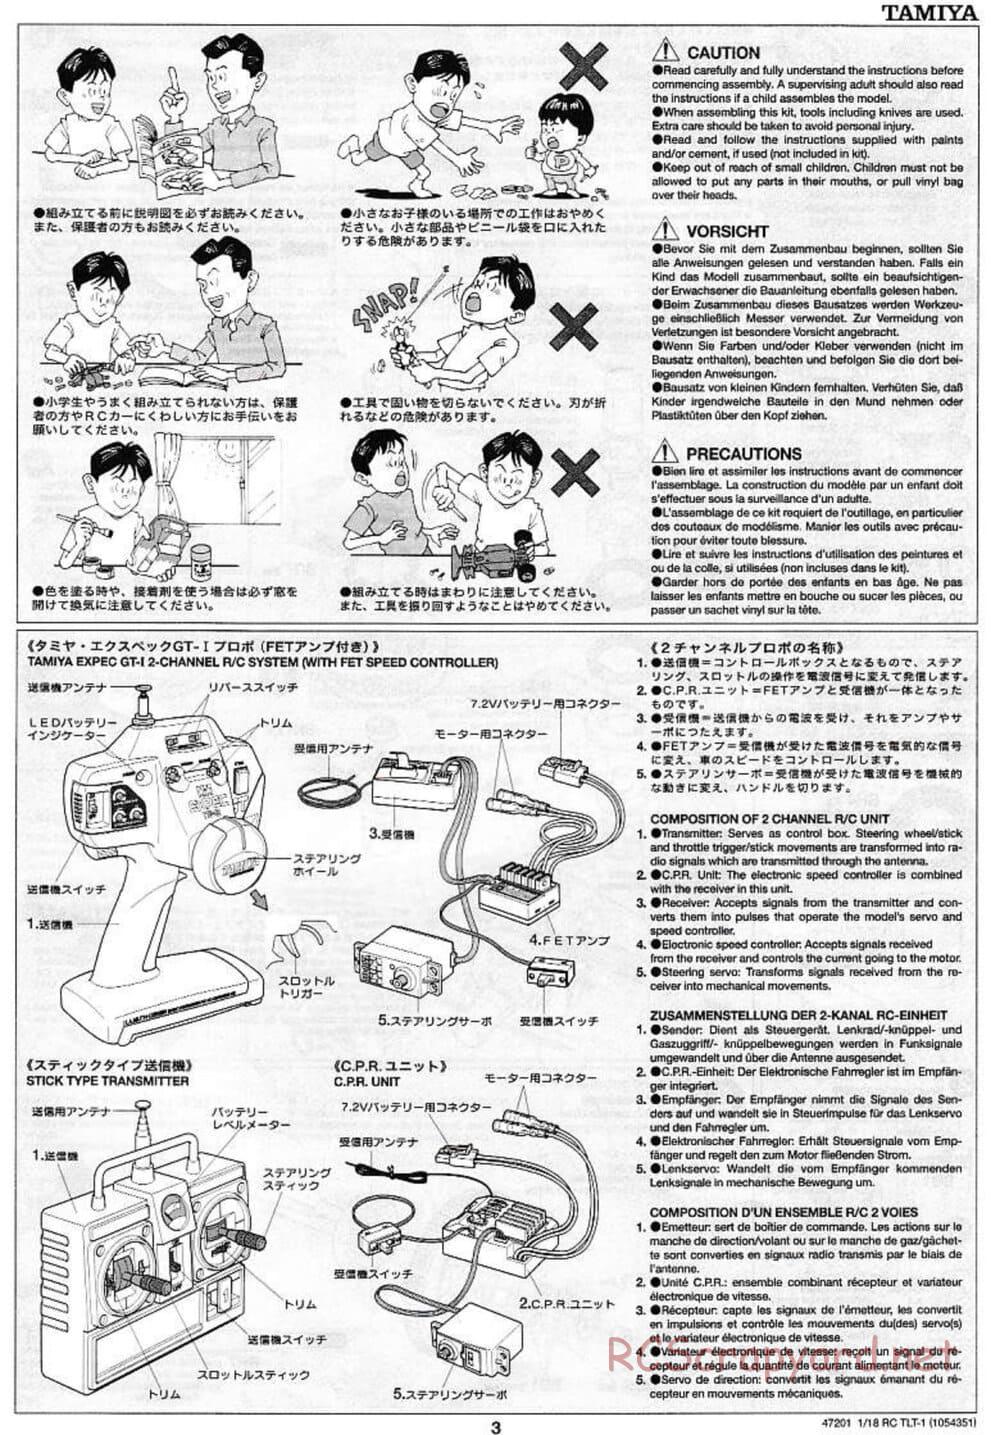 Tamiya - Rock Buster - TLT-1 Chassis - Manual - Page 3